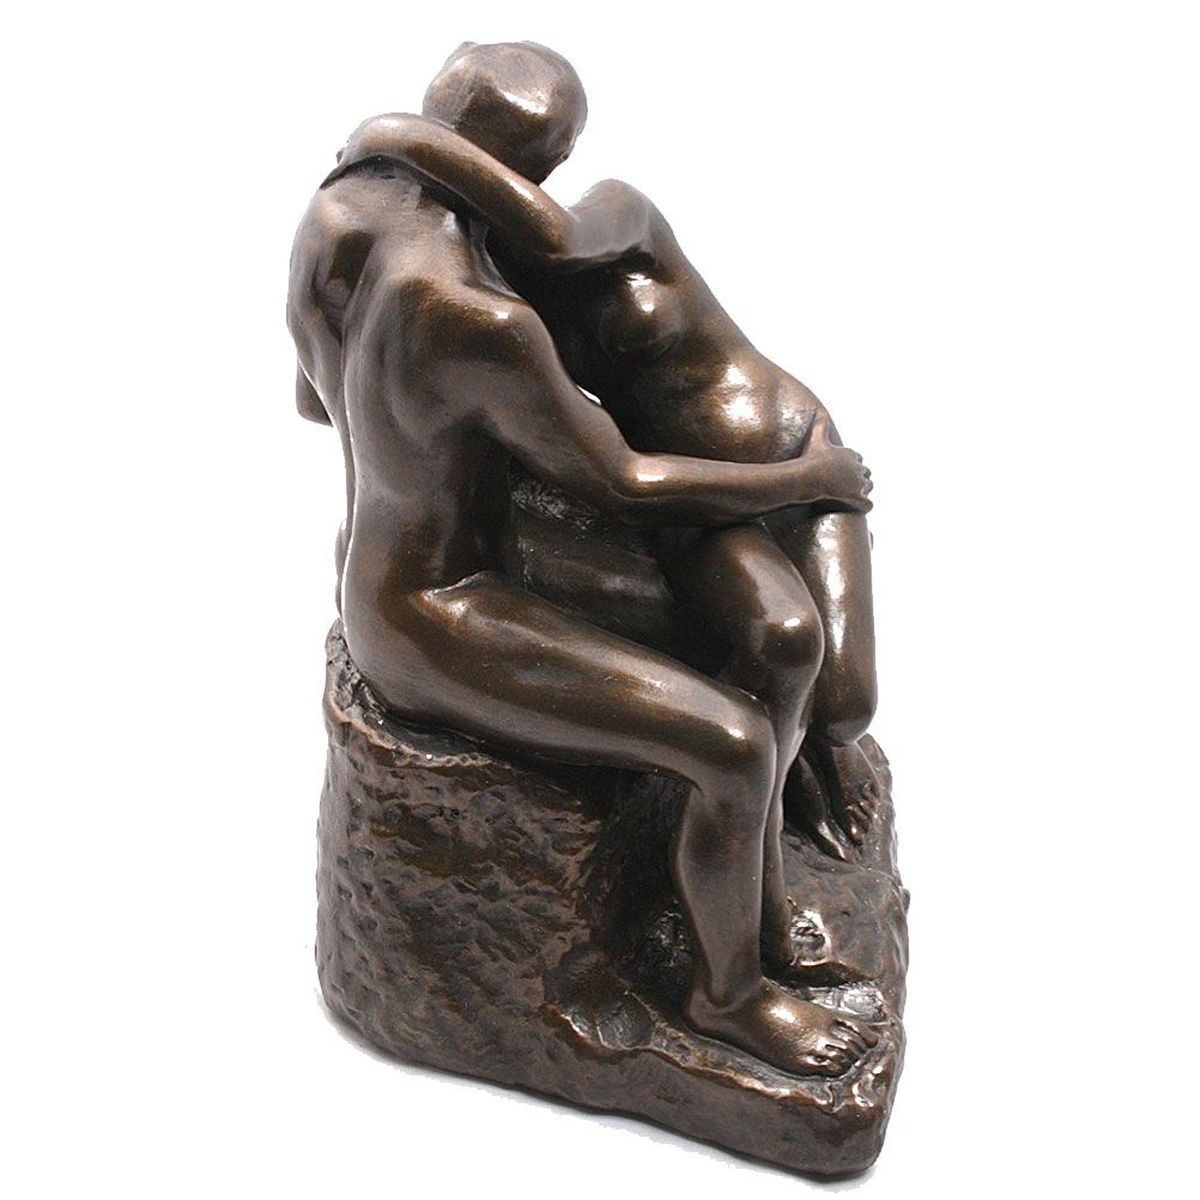 Reproduction Le Baiser de Rodin 17 cm